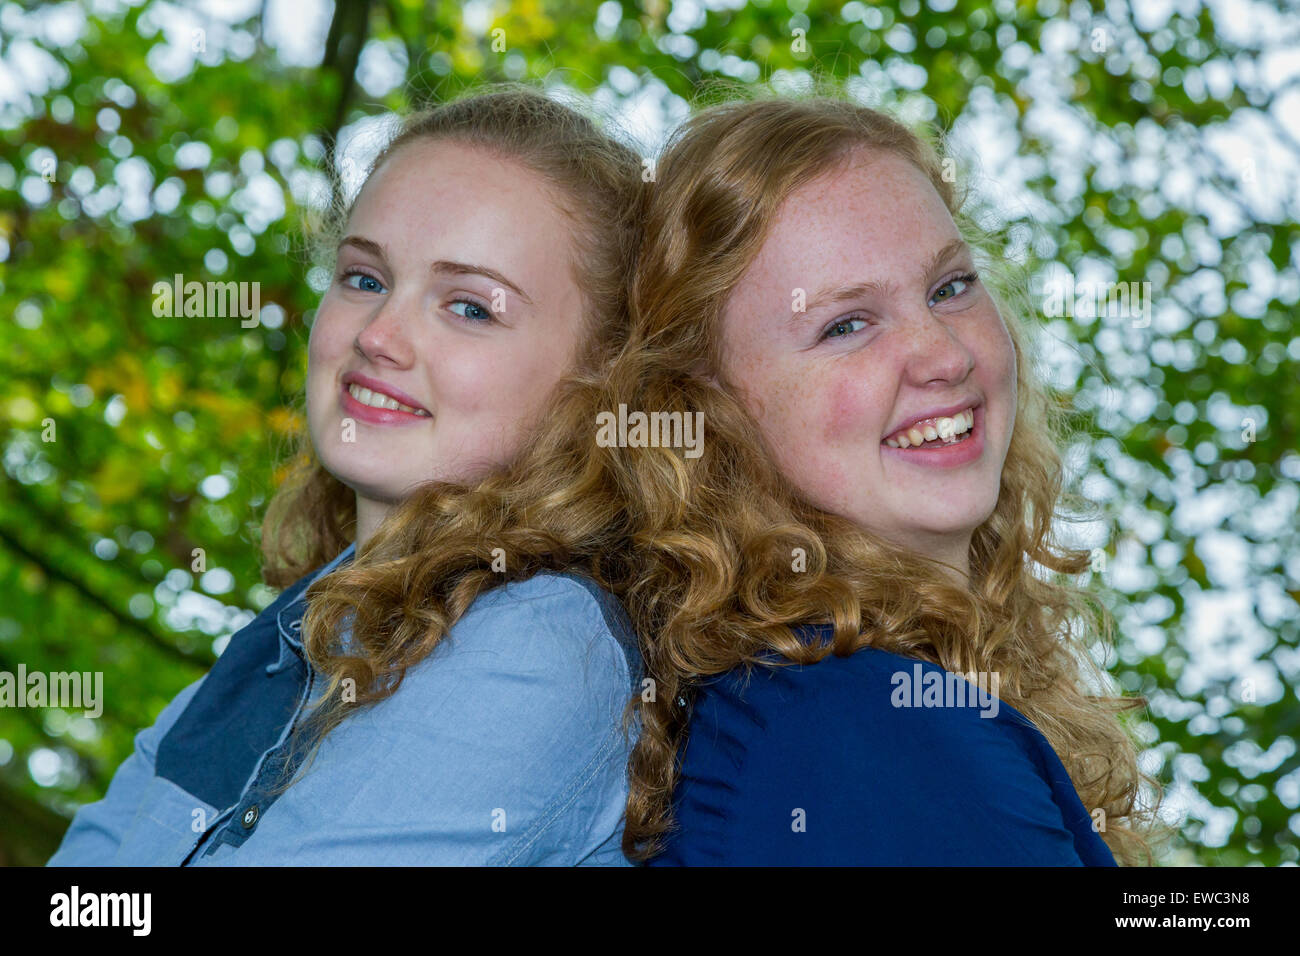 Zwei kaukasischen Teenager Schwestern Köpfe zusammen lachen unter grünen Baum Stockfoto